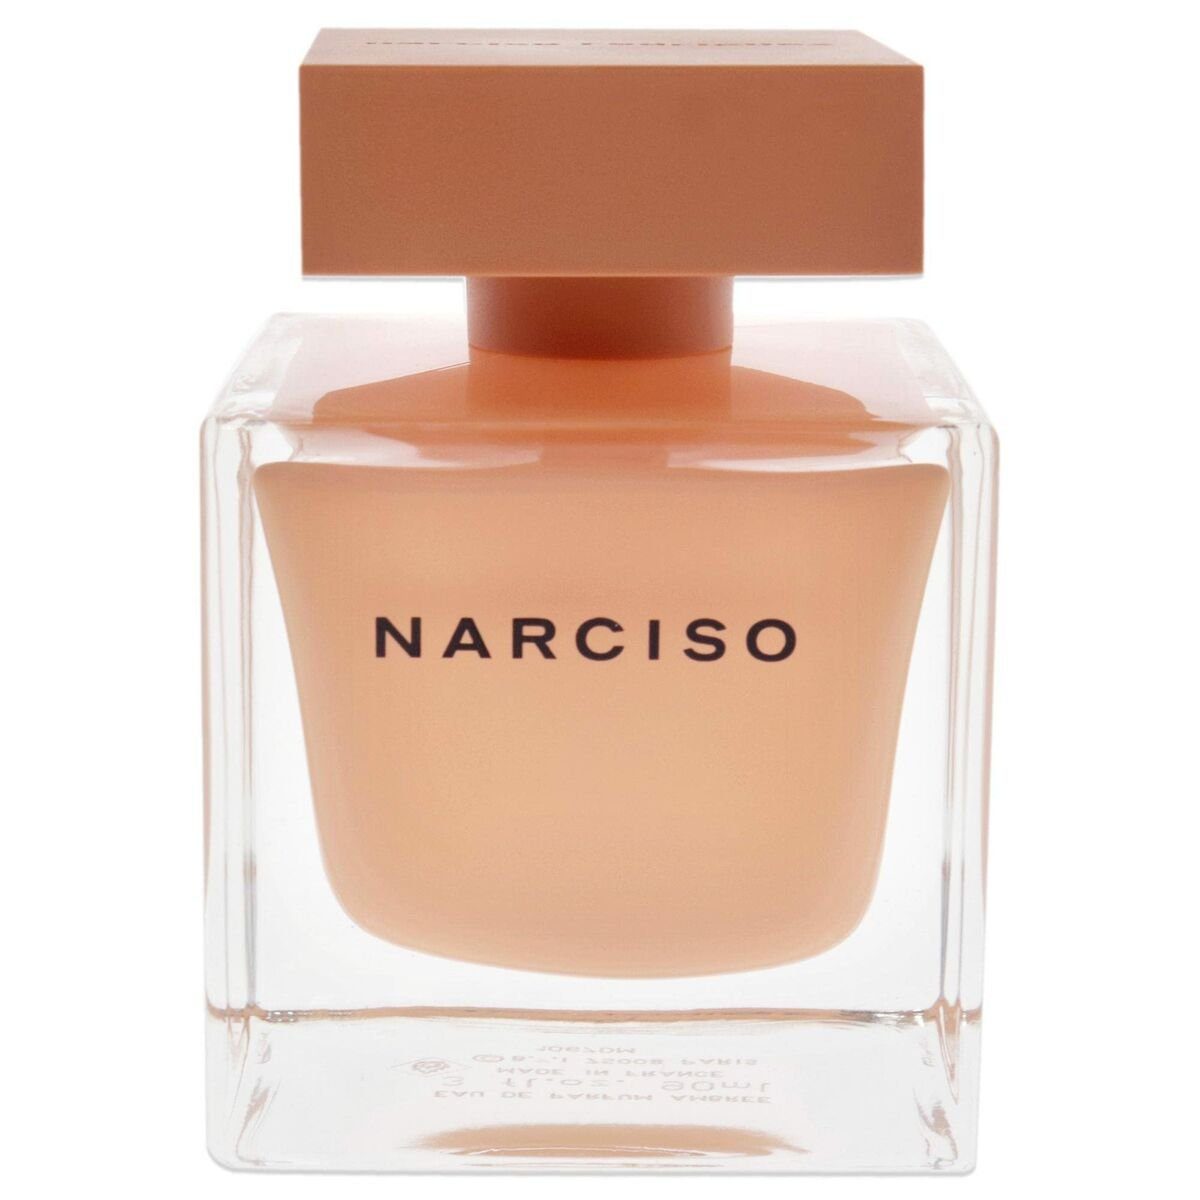 Parfum Narcisco Ambree Damenparfüm Rodriguez Eau Eau de Toilette narciso 90 ml rodriguez de Rodriguez Narciso Narciso